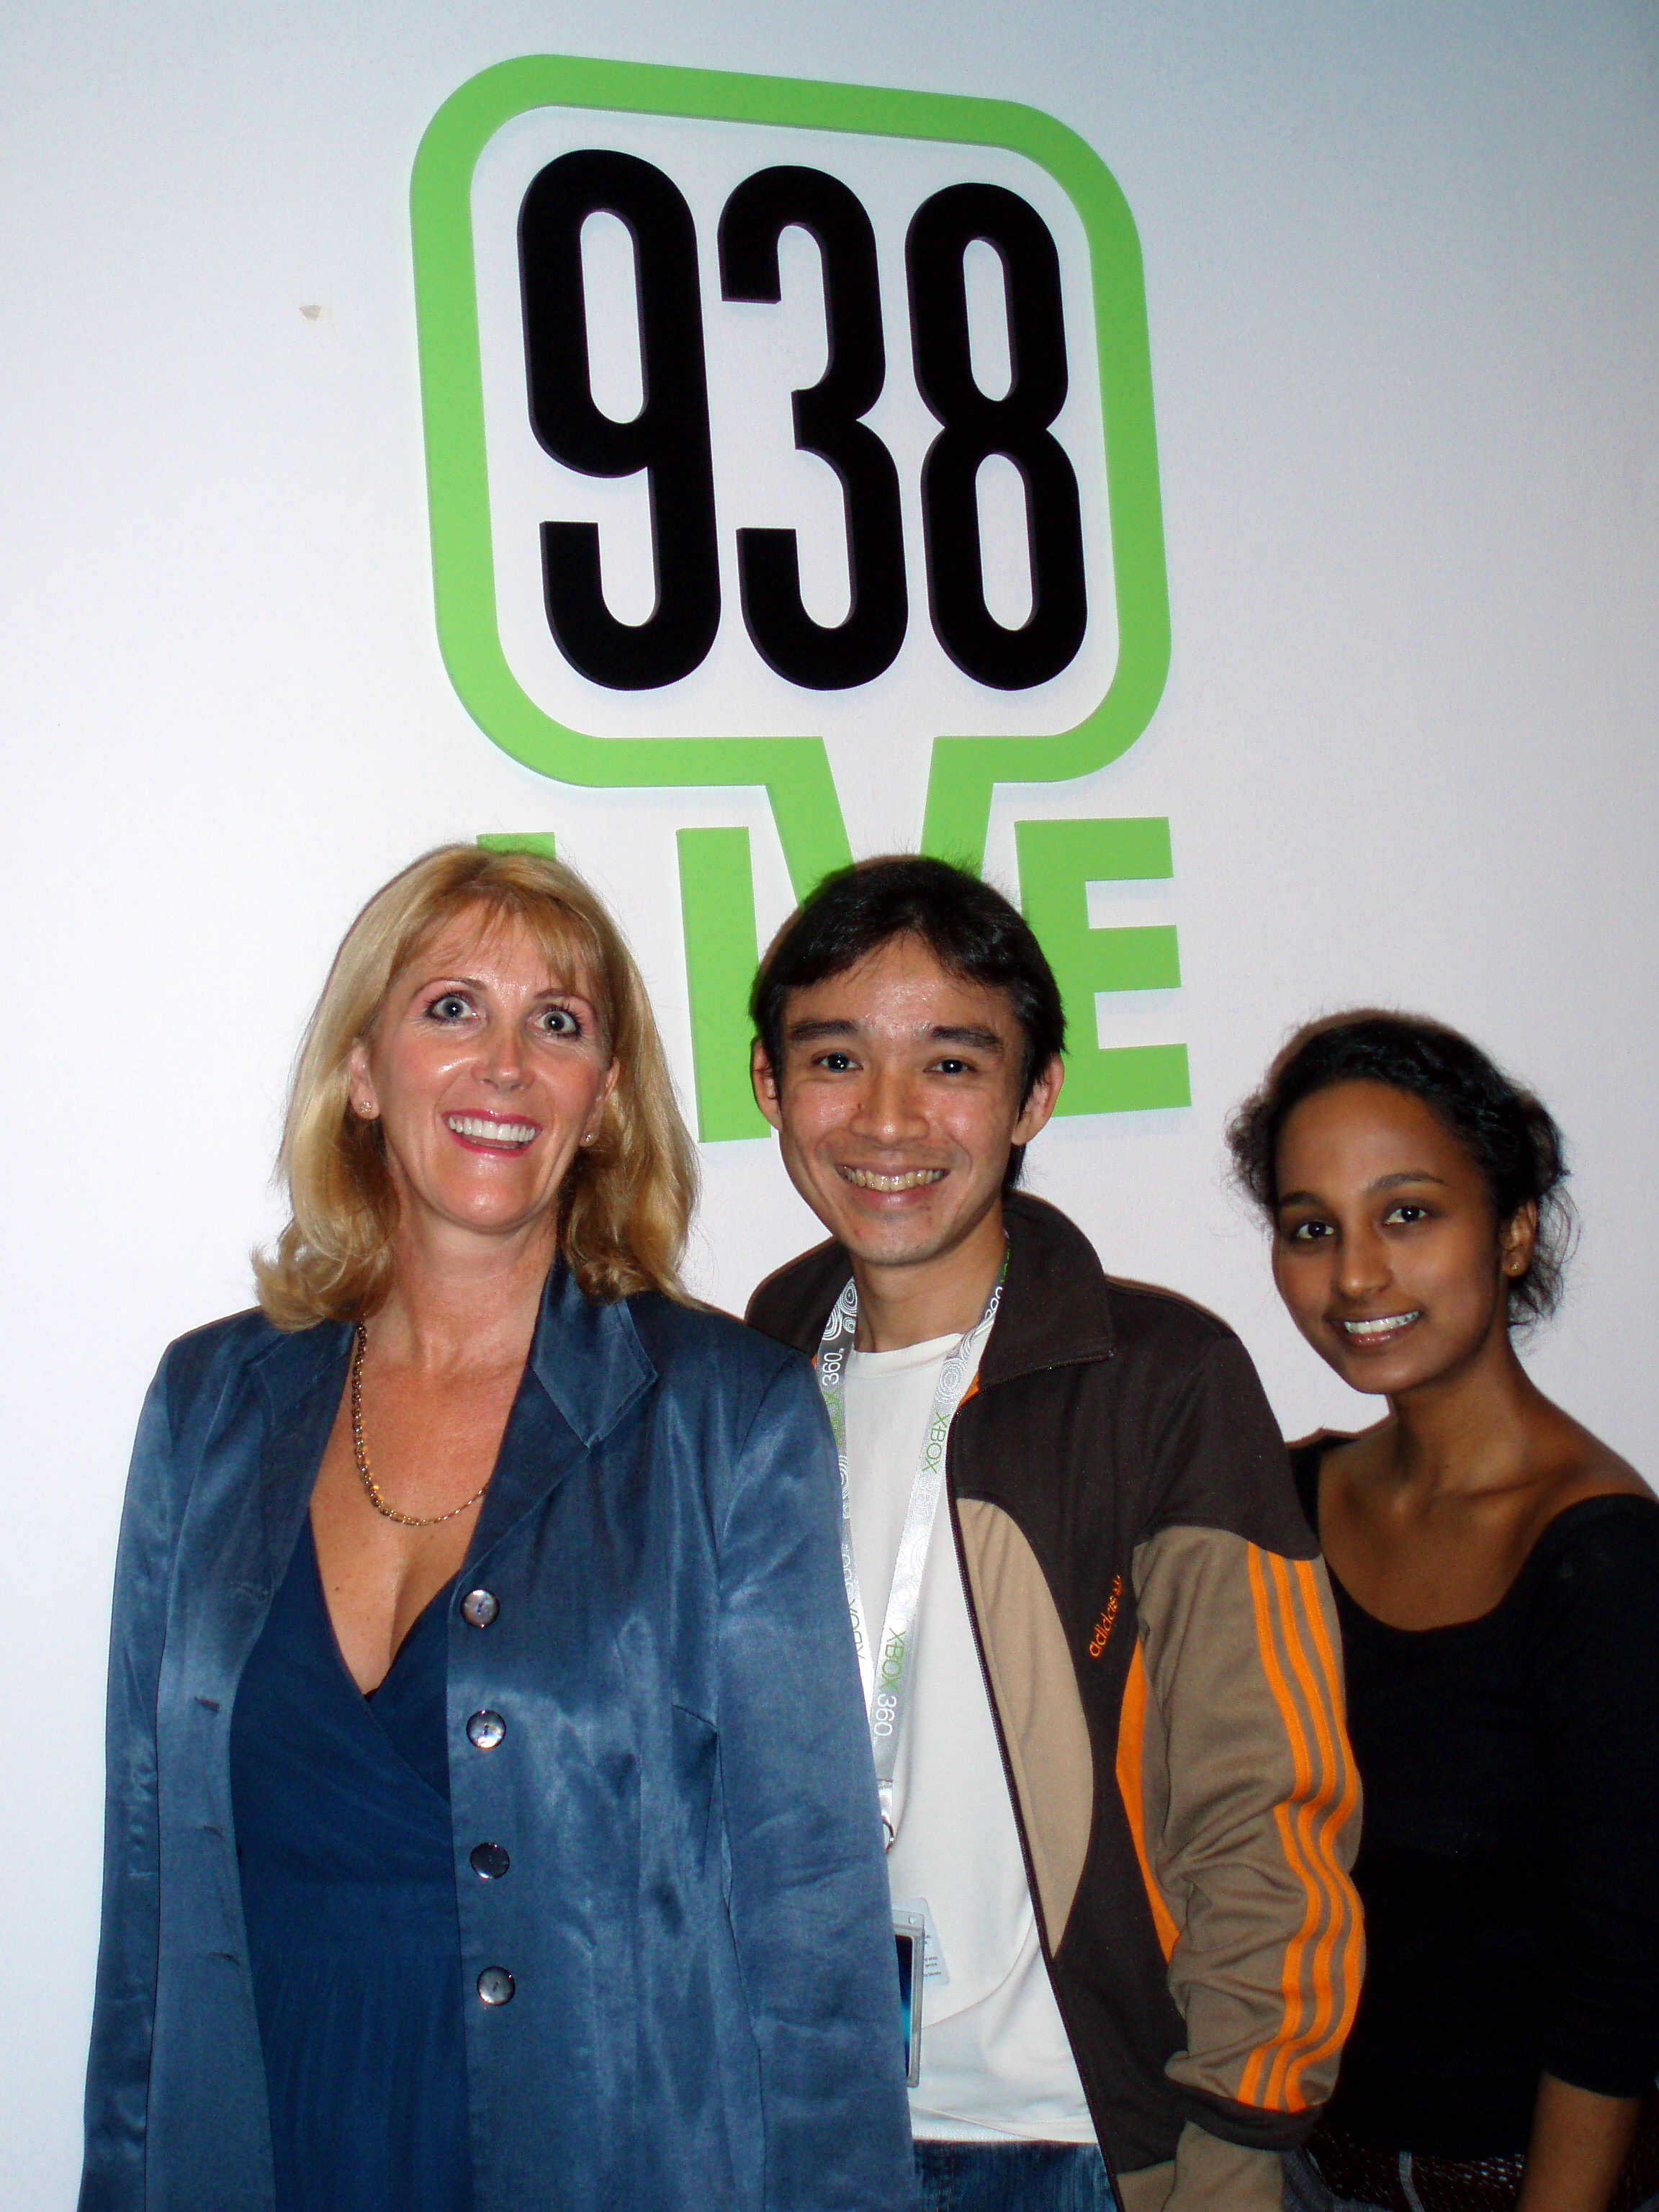 Shelley Interviewed Radio 938 Singapore